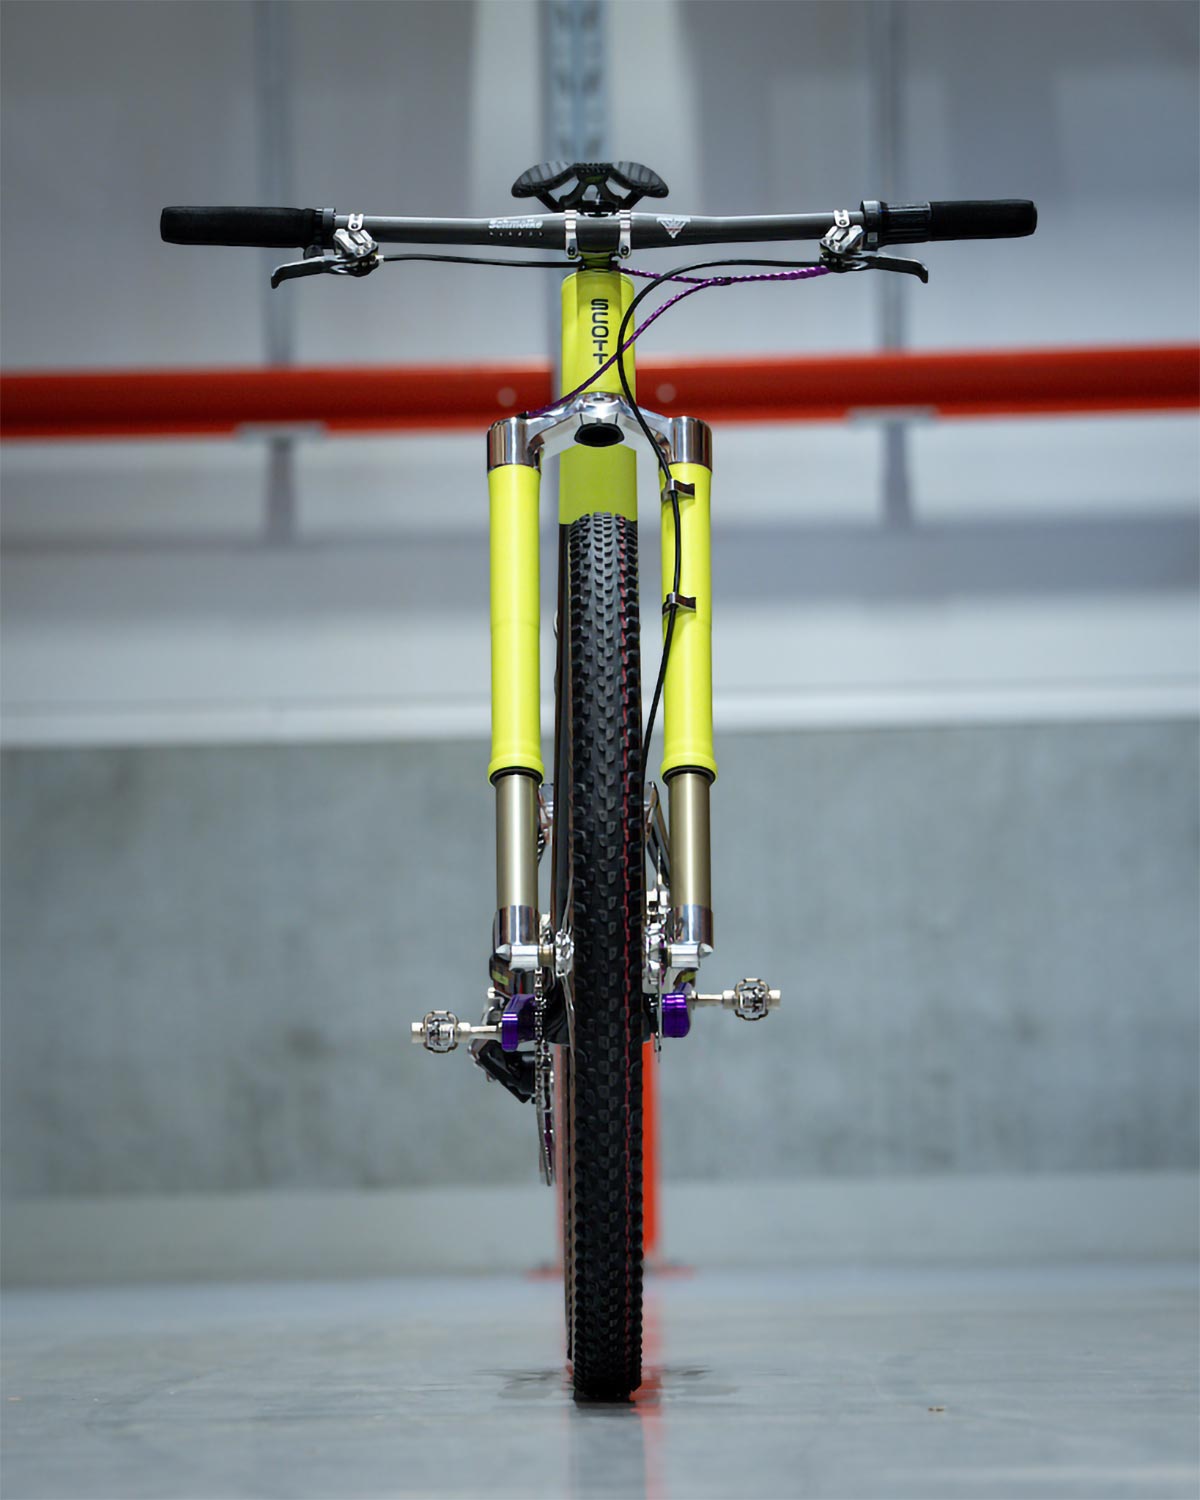 Scott Spark RC Neon Project de Dangerholm, una bici lista para competir por debajo de los 9 kilos